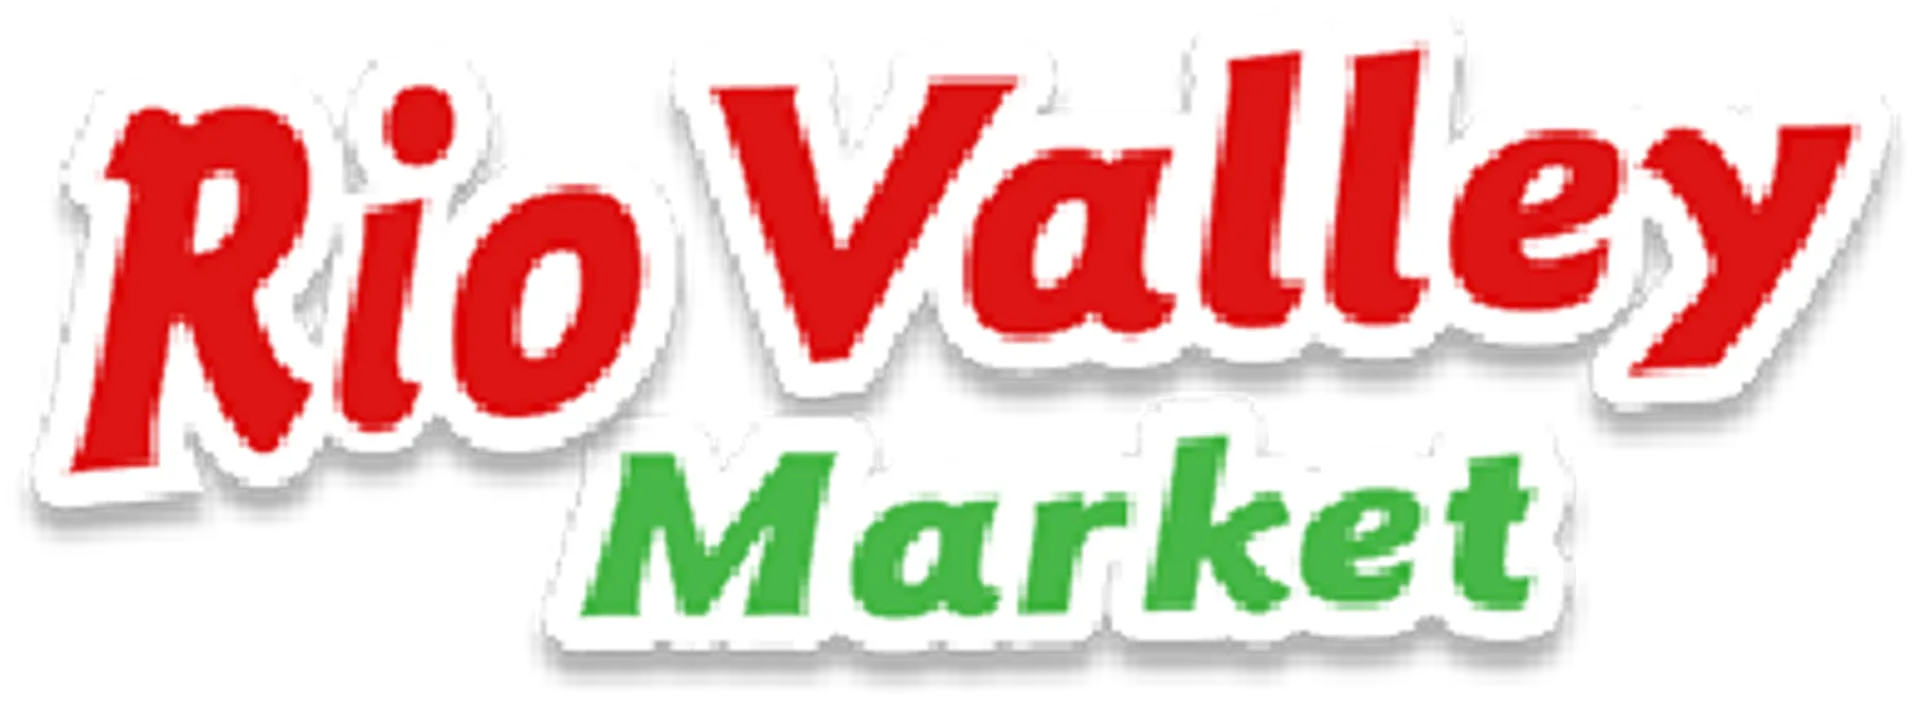 RIO VALLEY MARKET logo de catálogo